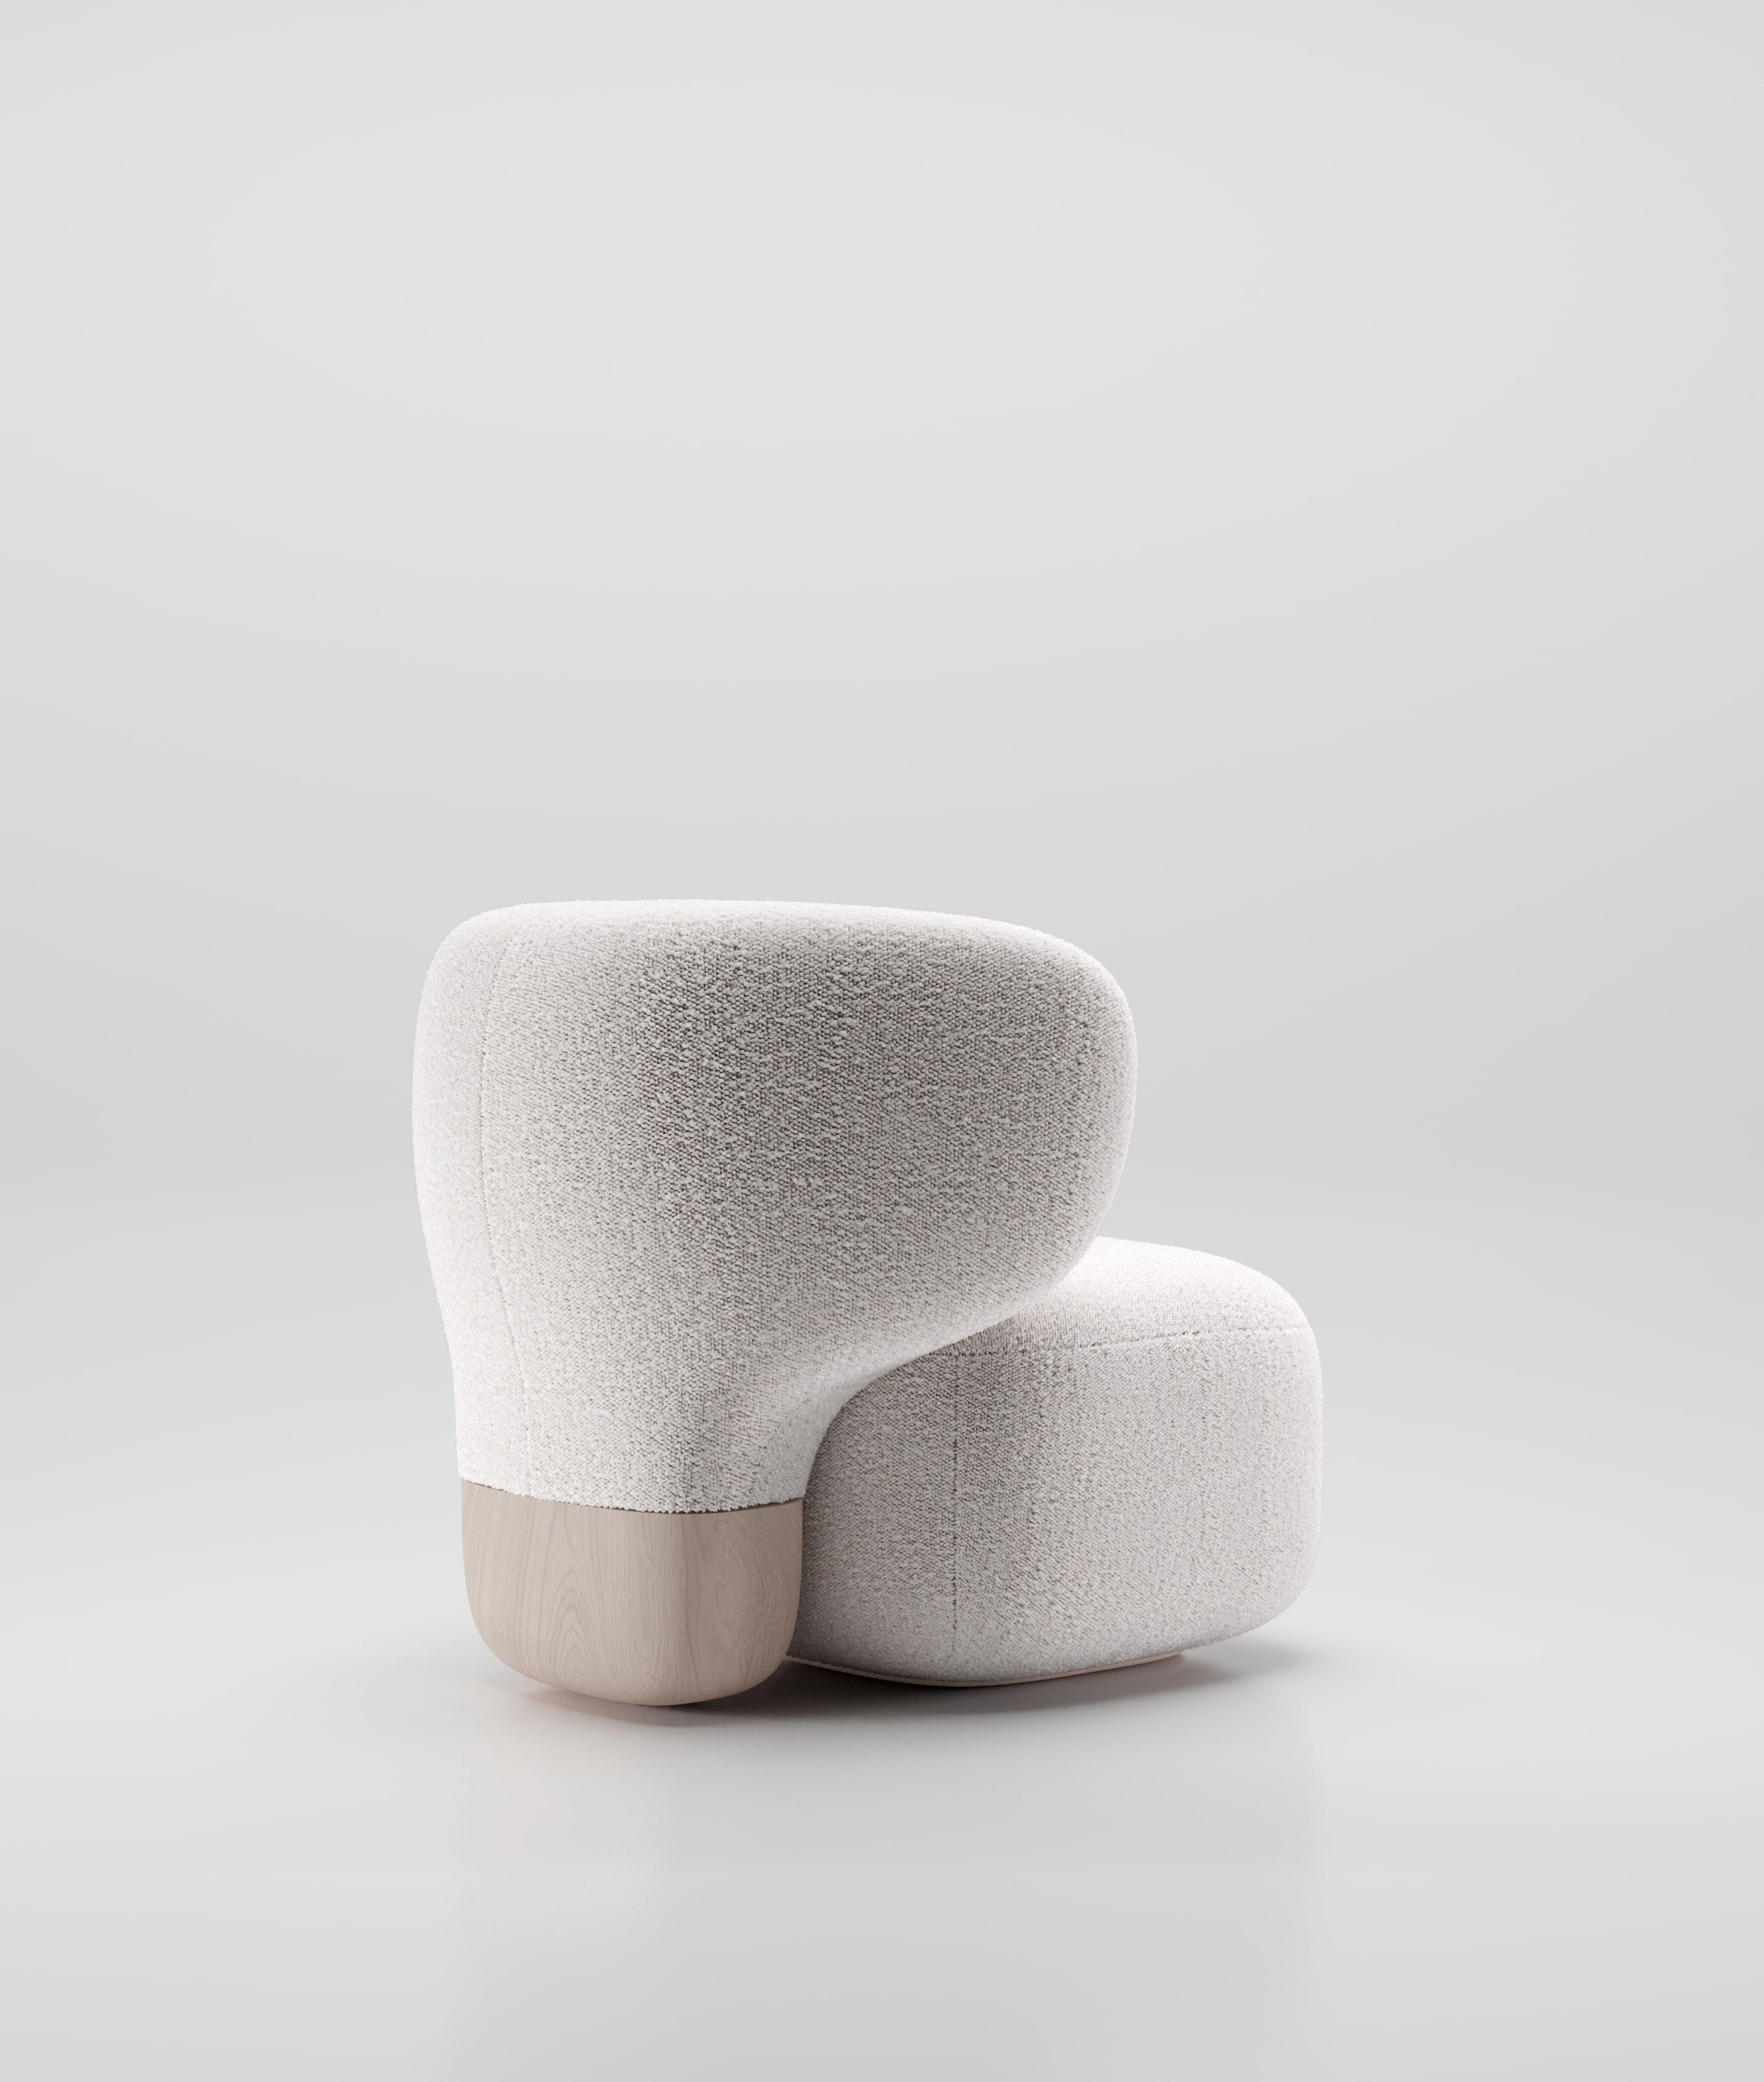 Der Asawa Lounge Chair, der das Asawa Sofa begleitet, zeichnet sich durch eine skulpturale und organische Rückenlehne aus, die aus dem Boden gewachsen zu sein scheint. Ein massives Holzstück dient als Basis für diese geschwungene und umhüllende